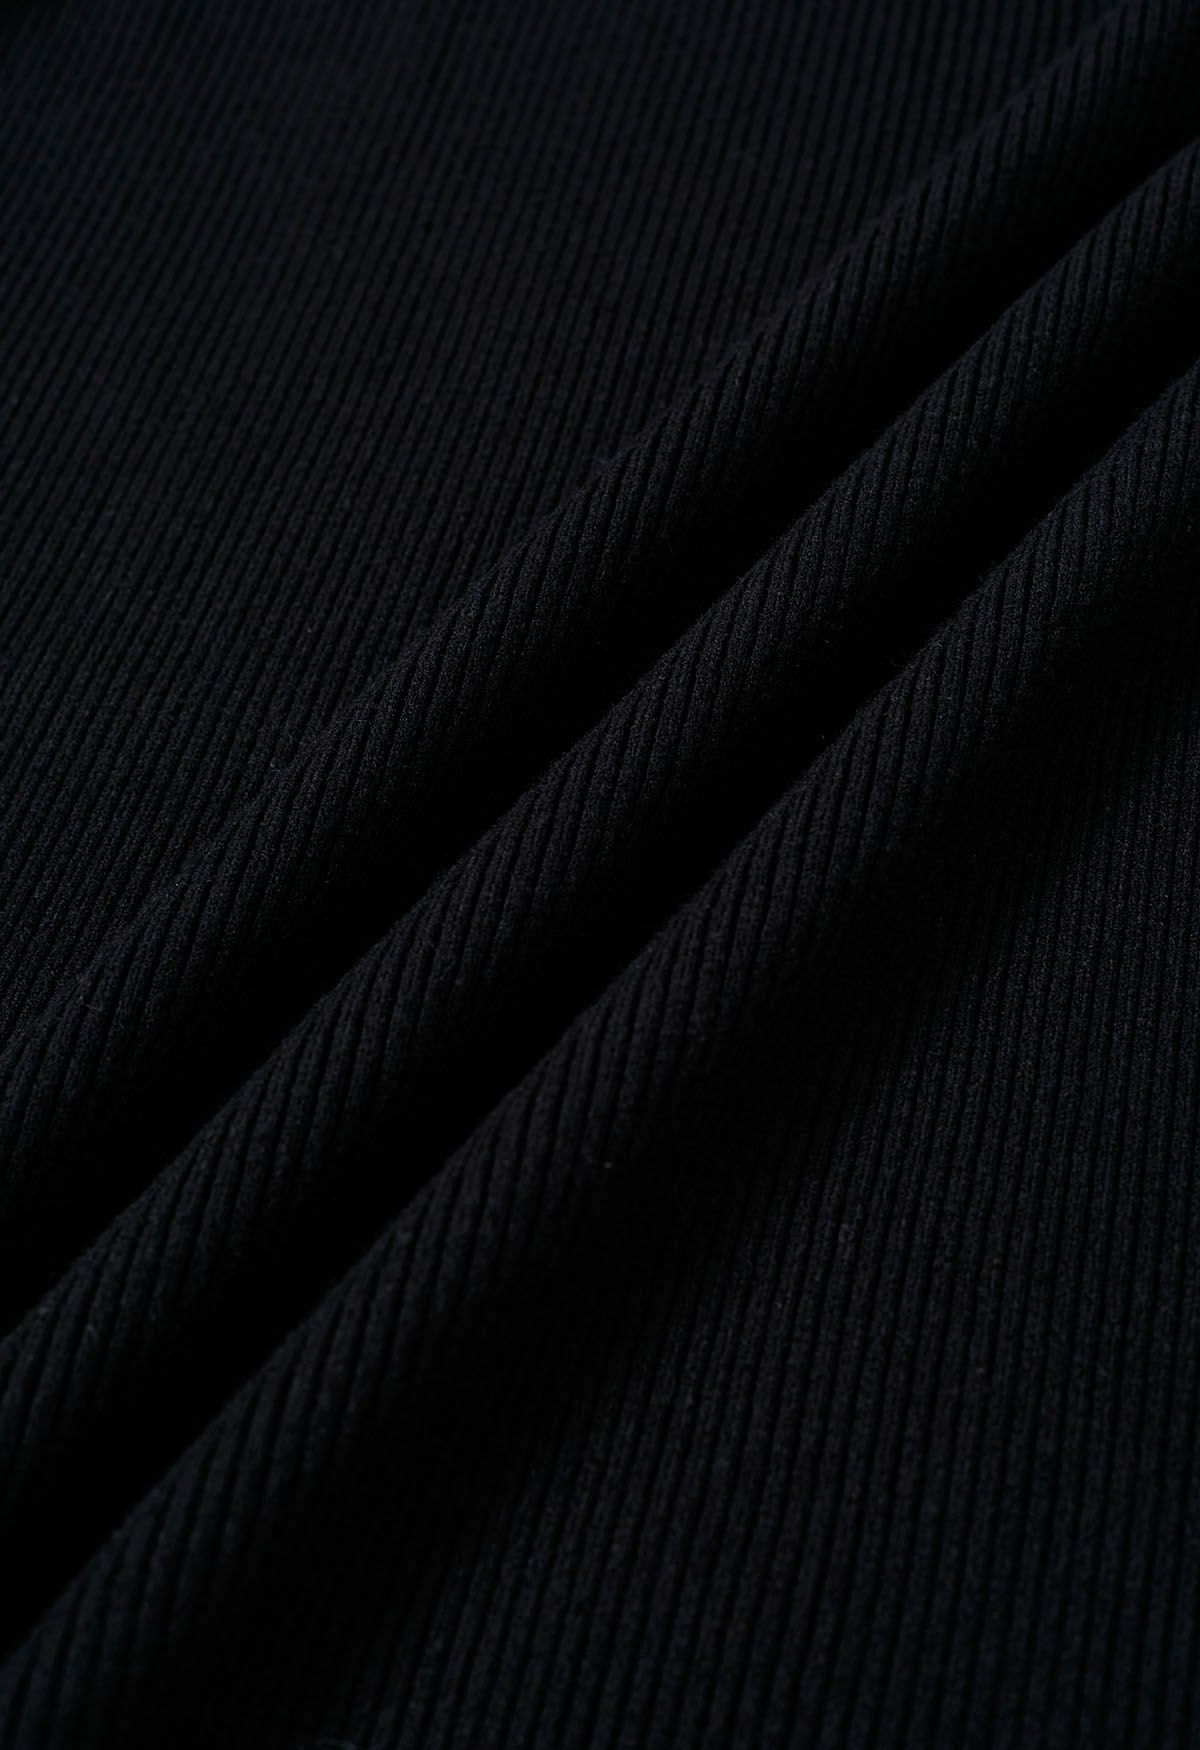 Conjunto de vestido y bolero de punto fruncido con cuello halter entrecruzado en negro